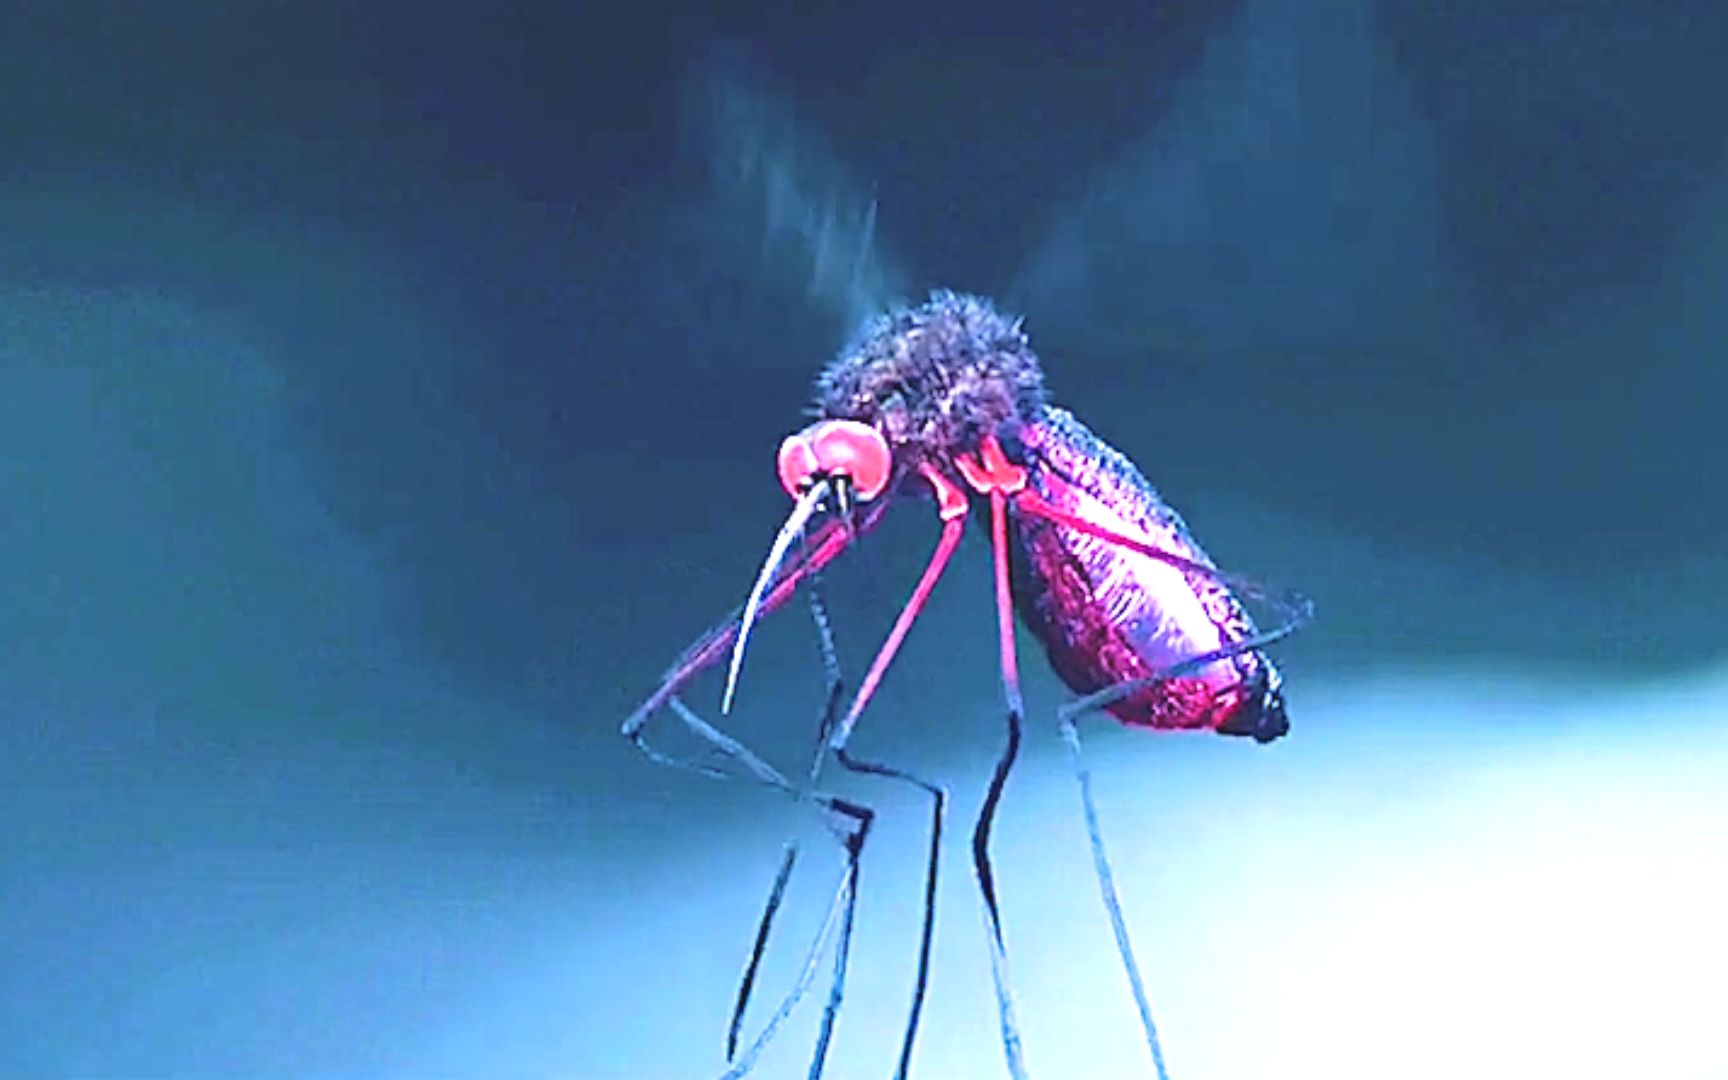 一只生猛的蚊子,连吸血鬼都敢咬,电影《僵尸刑警》